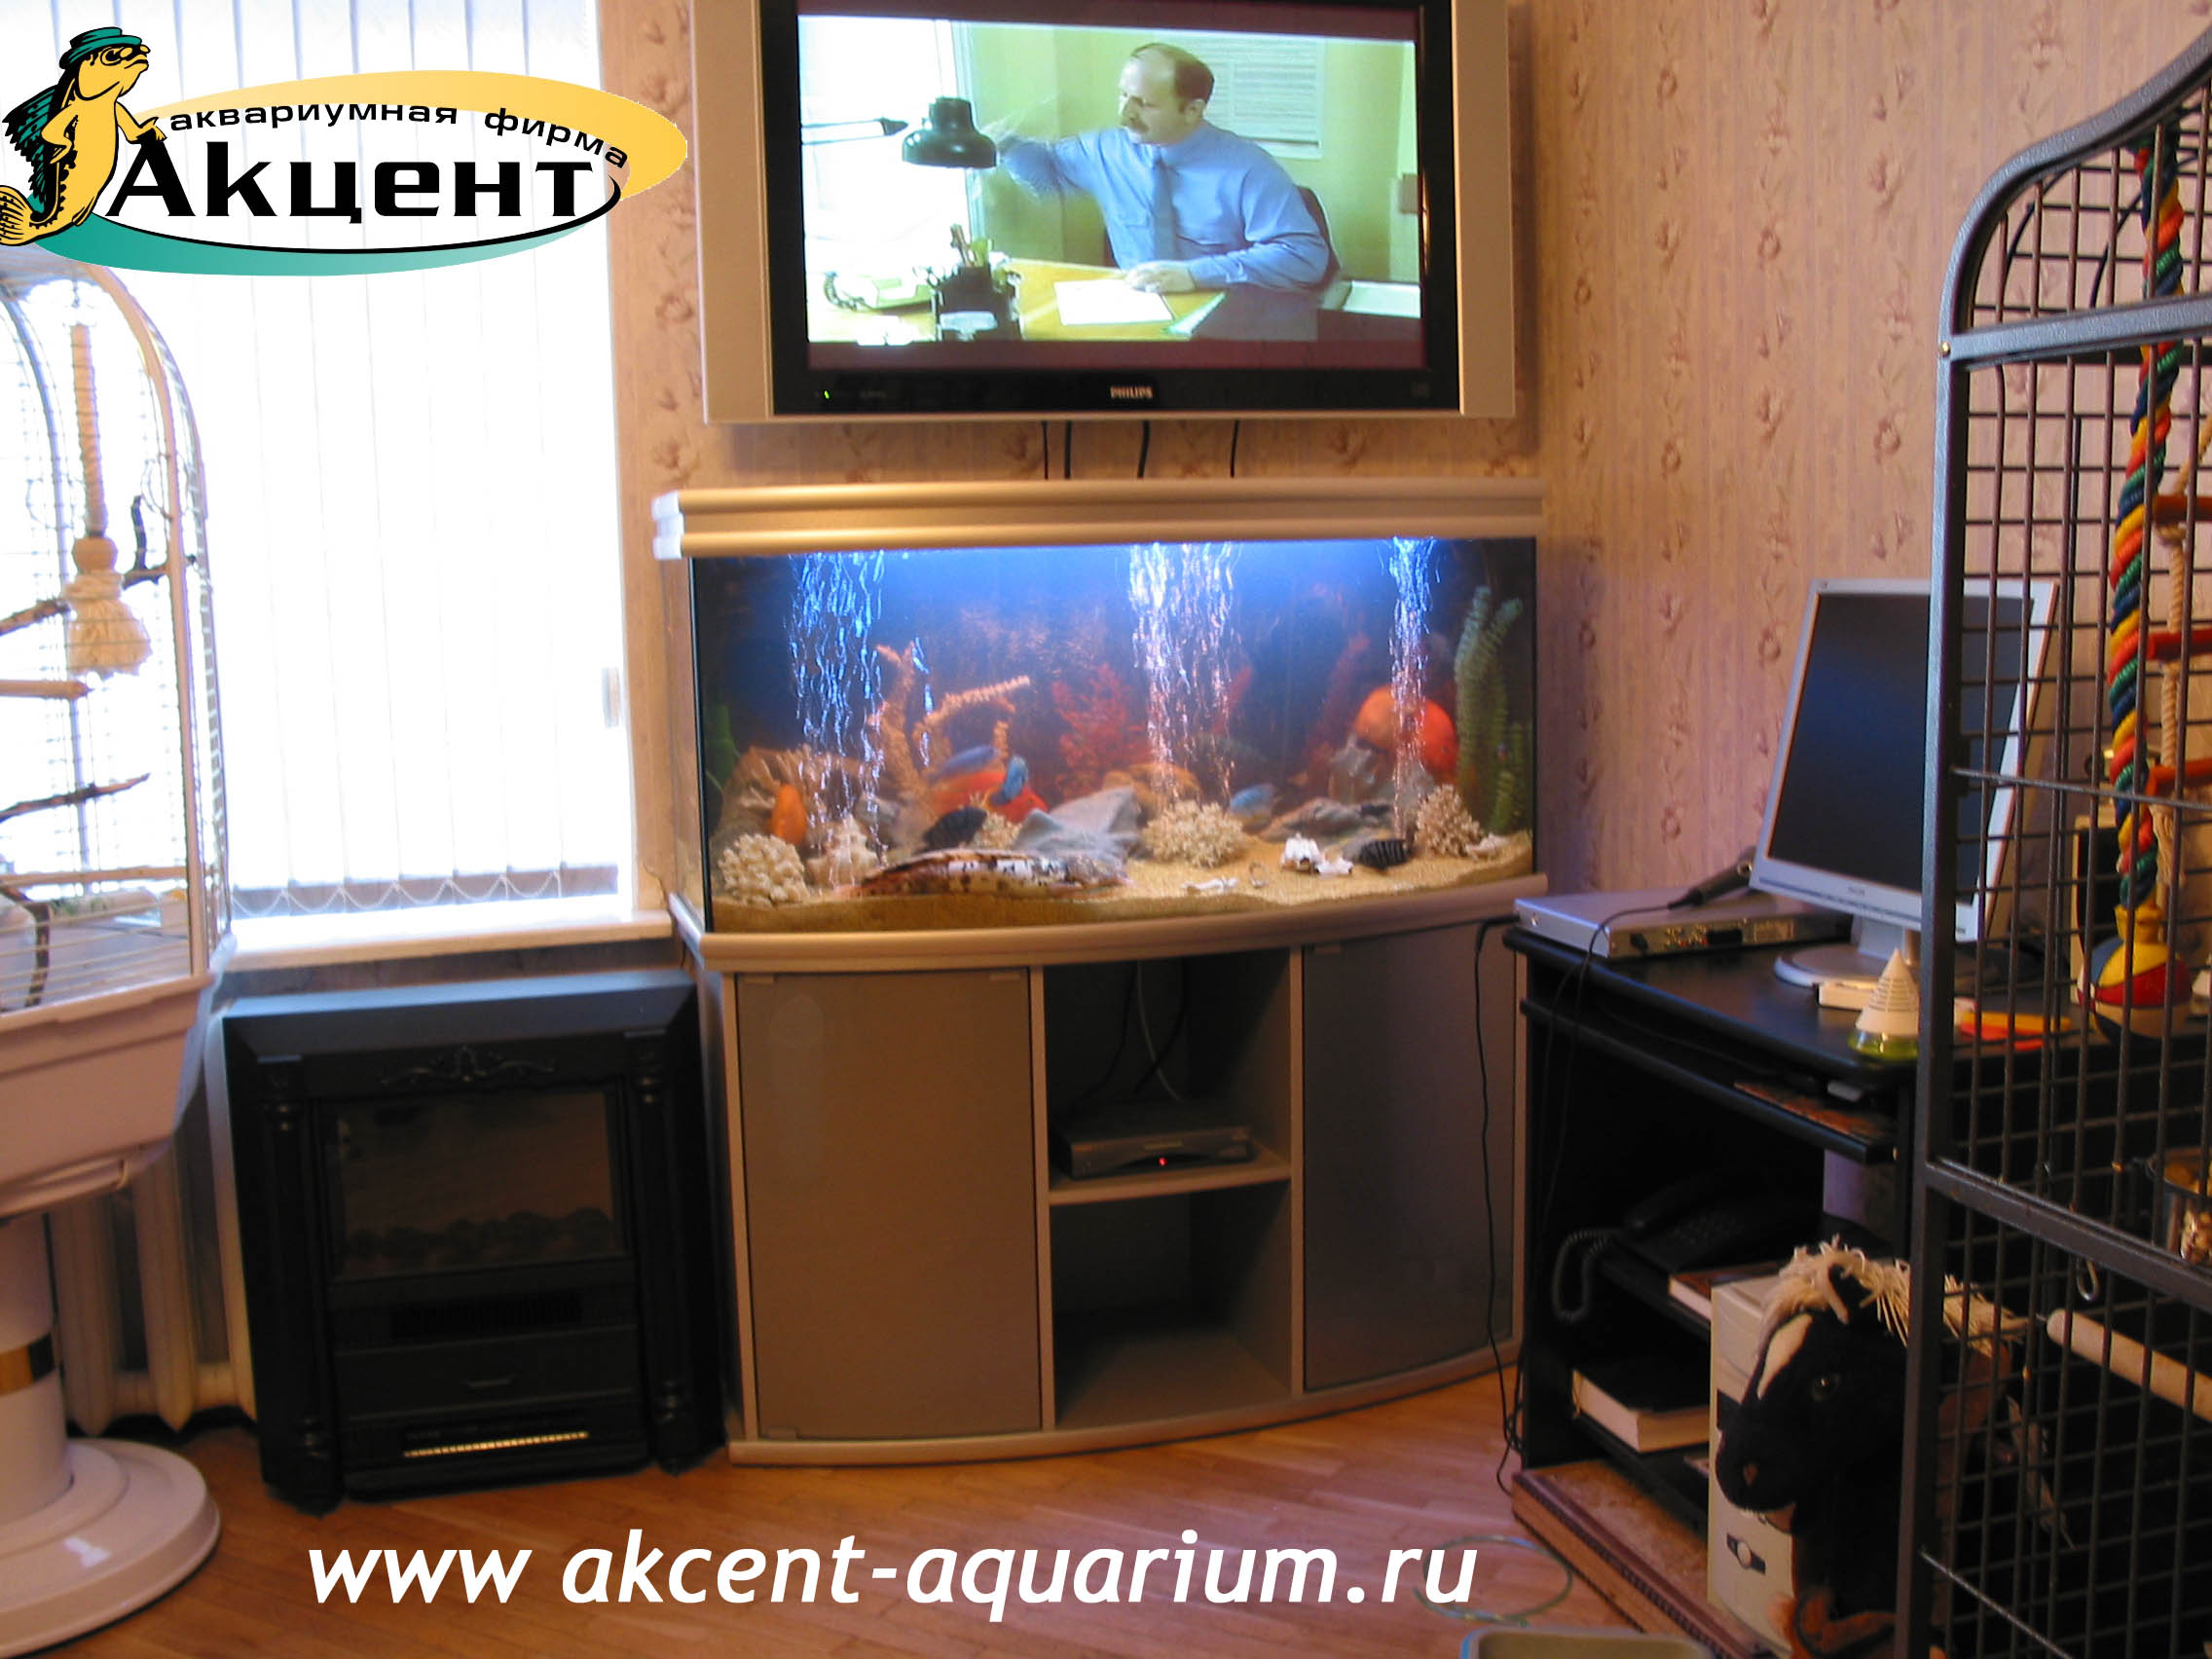 Акцент-аквариум, аквариум 280 литров, с гнутым передним стеклом